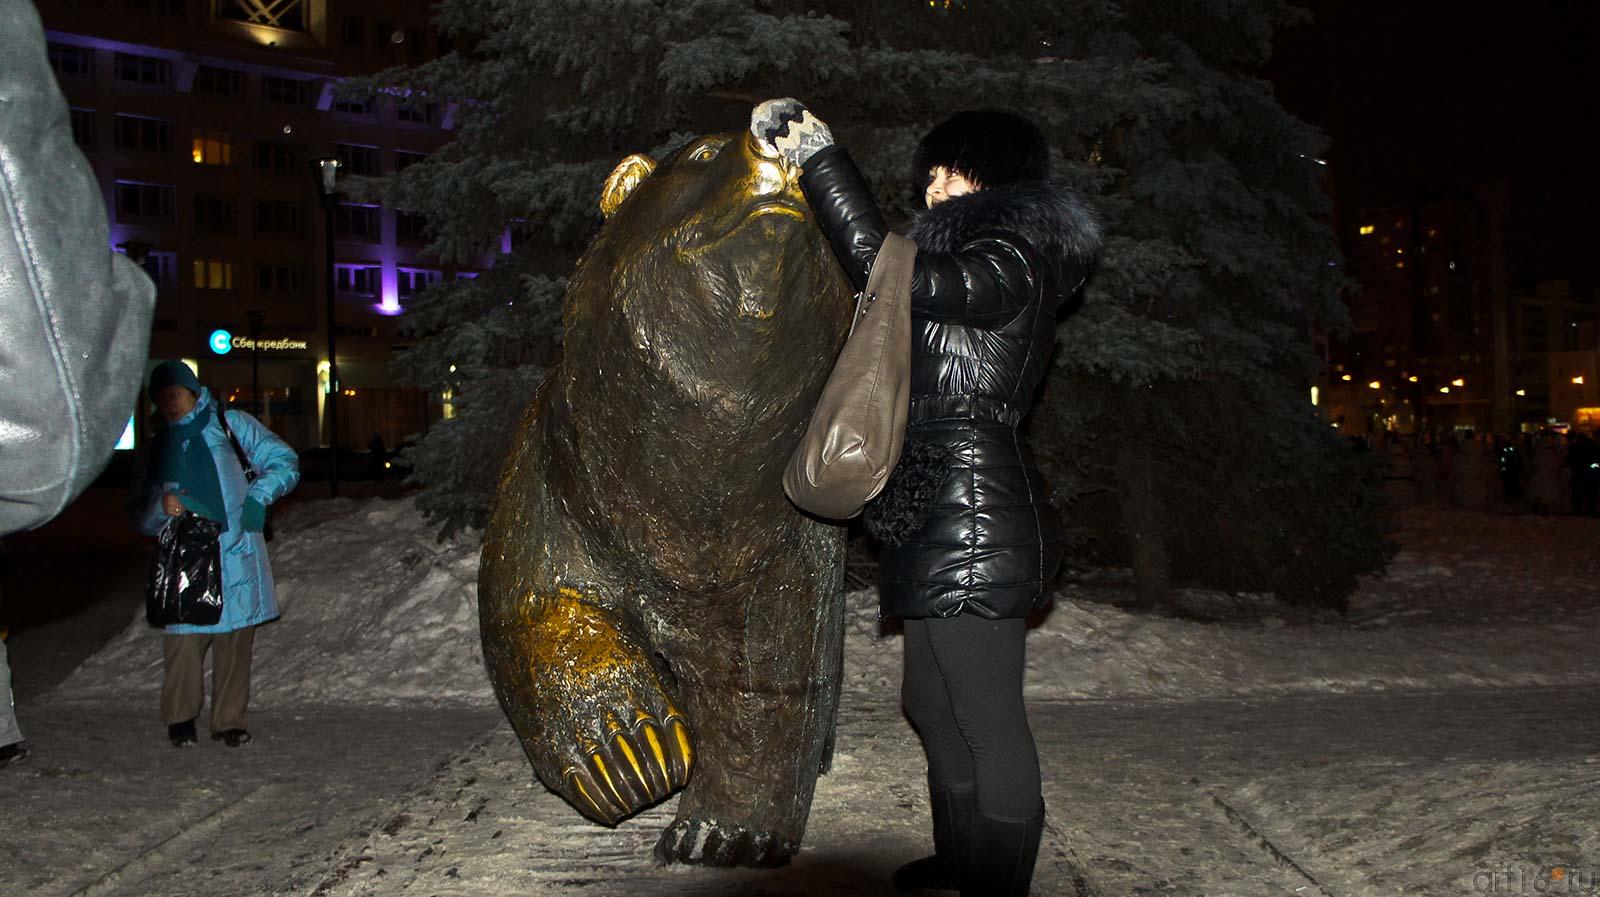 Идущий медведь. Скульптура. Символ города Пермь::Прогулка по Перми